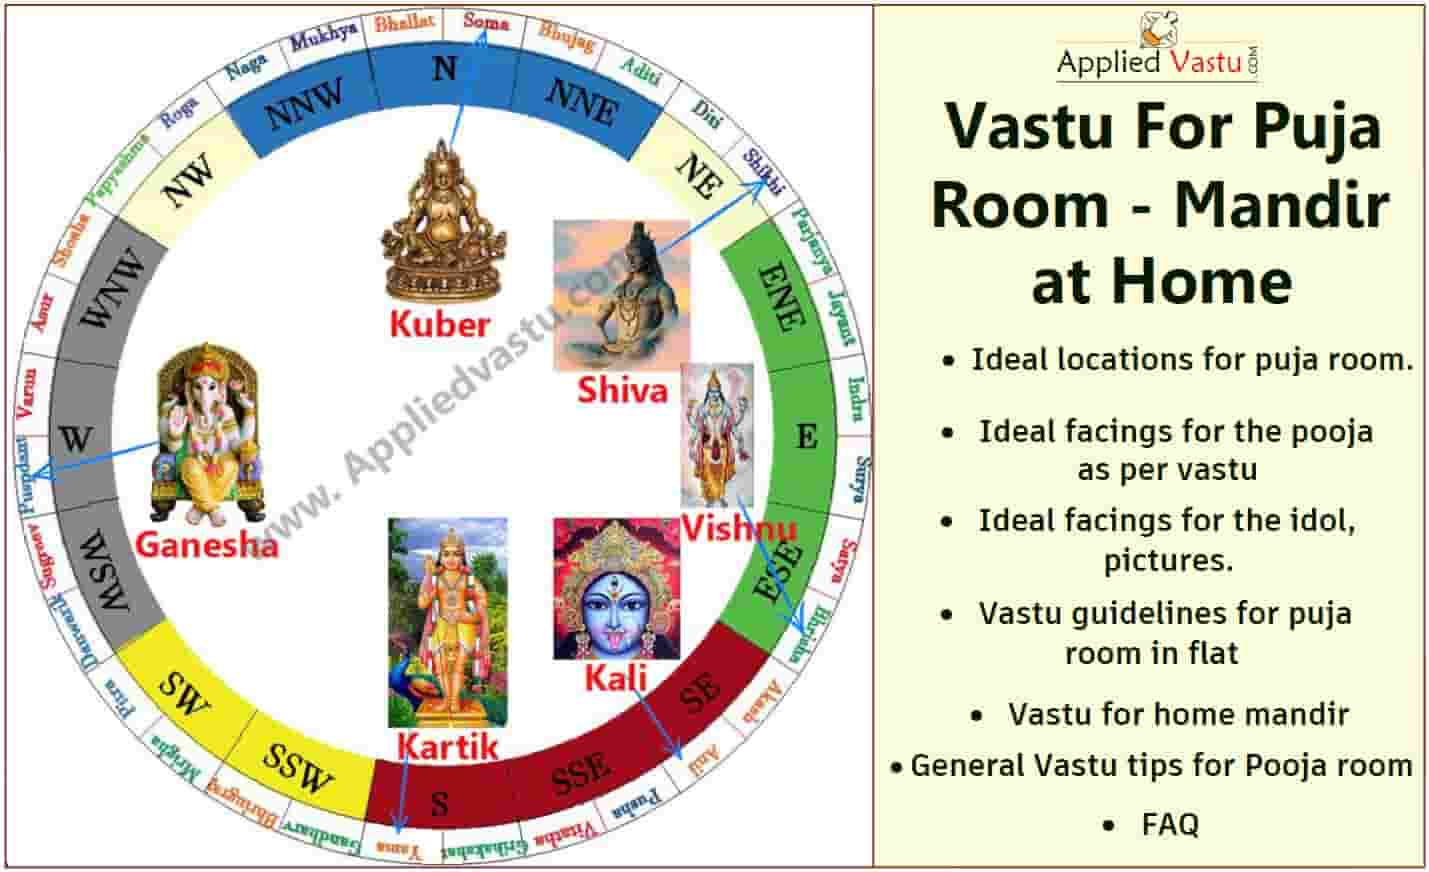 Vastu for puja room - Pooja room vastu - Mandir Vastu - Vastu shastra for temple - vastu for puja room - Applied Vastu- Vastu tips for puja room